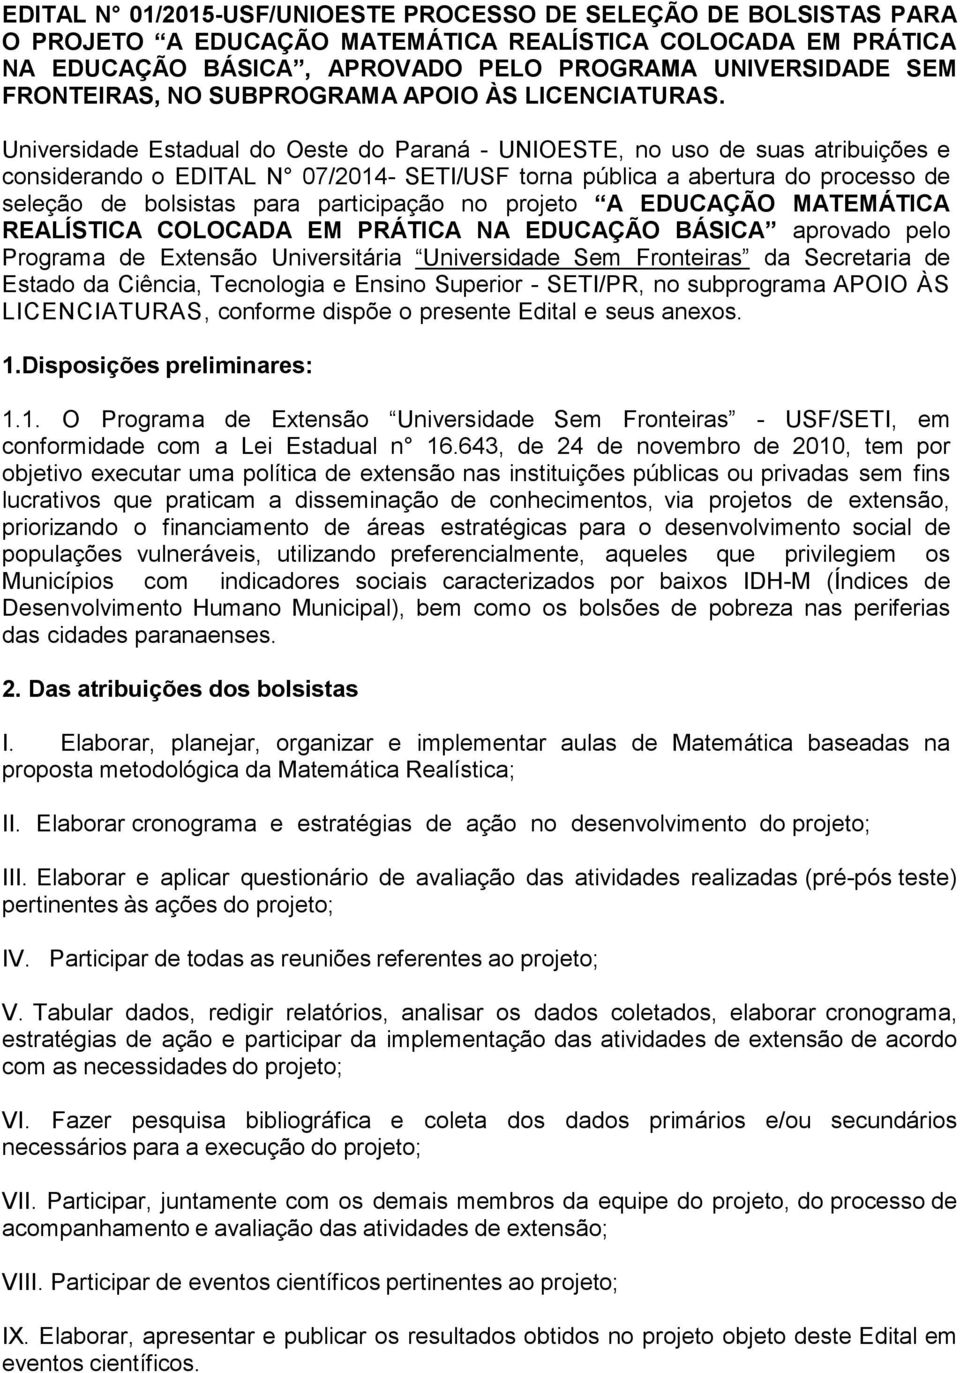 Universidade Estadual do Oeste do Paraná - UNIOESTE, no uso de suas atribuições e considerando o EDITAL N 07/2014- SETI/USF torna pública a abertura do processo de seleção de bolsistas para